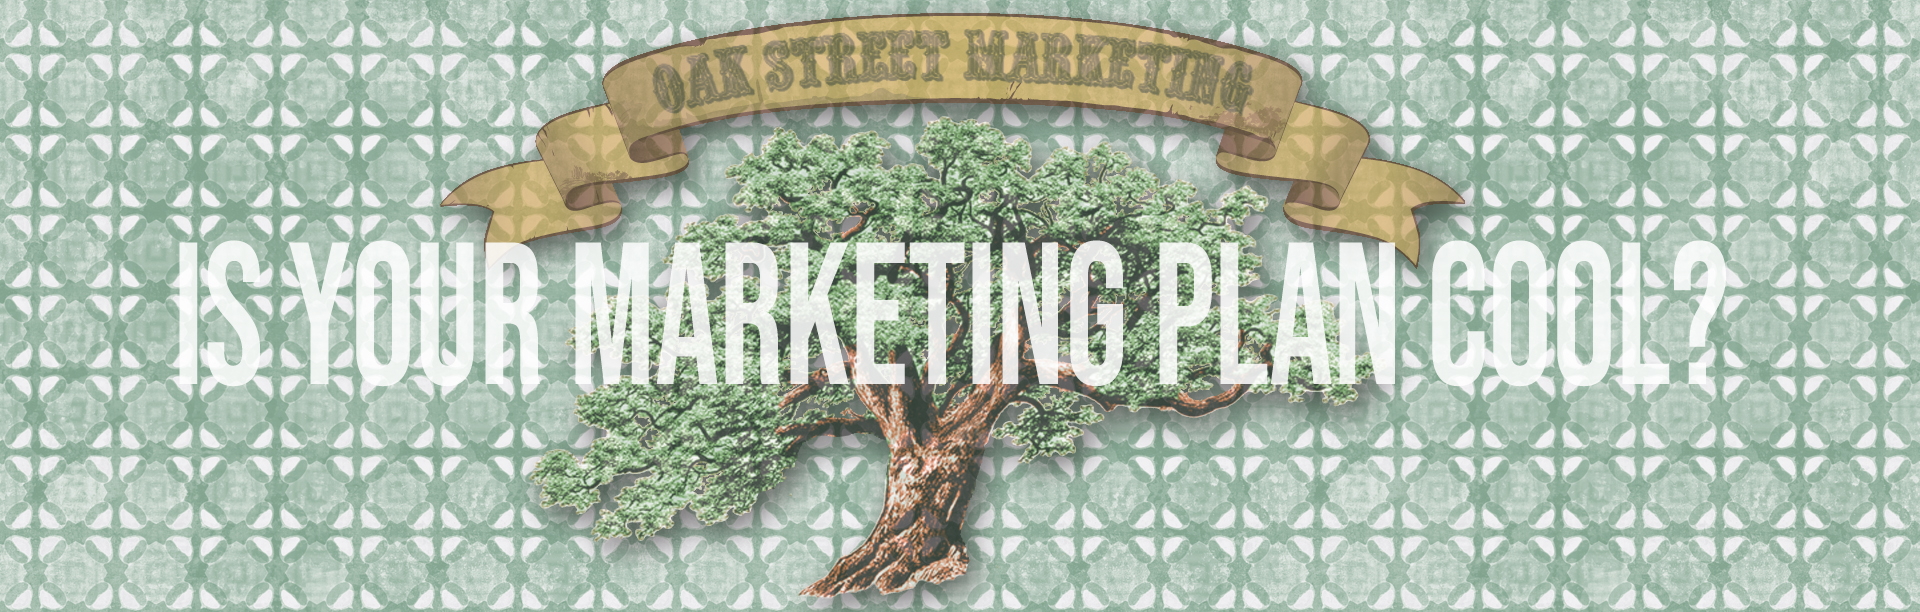 Oak Street Marketing Marketing Plans